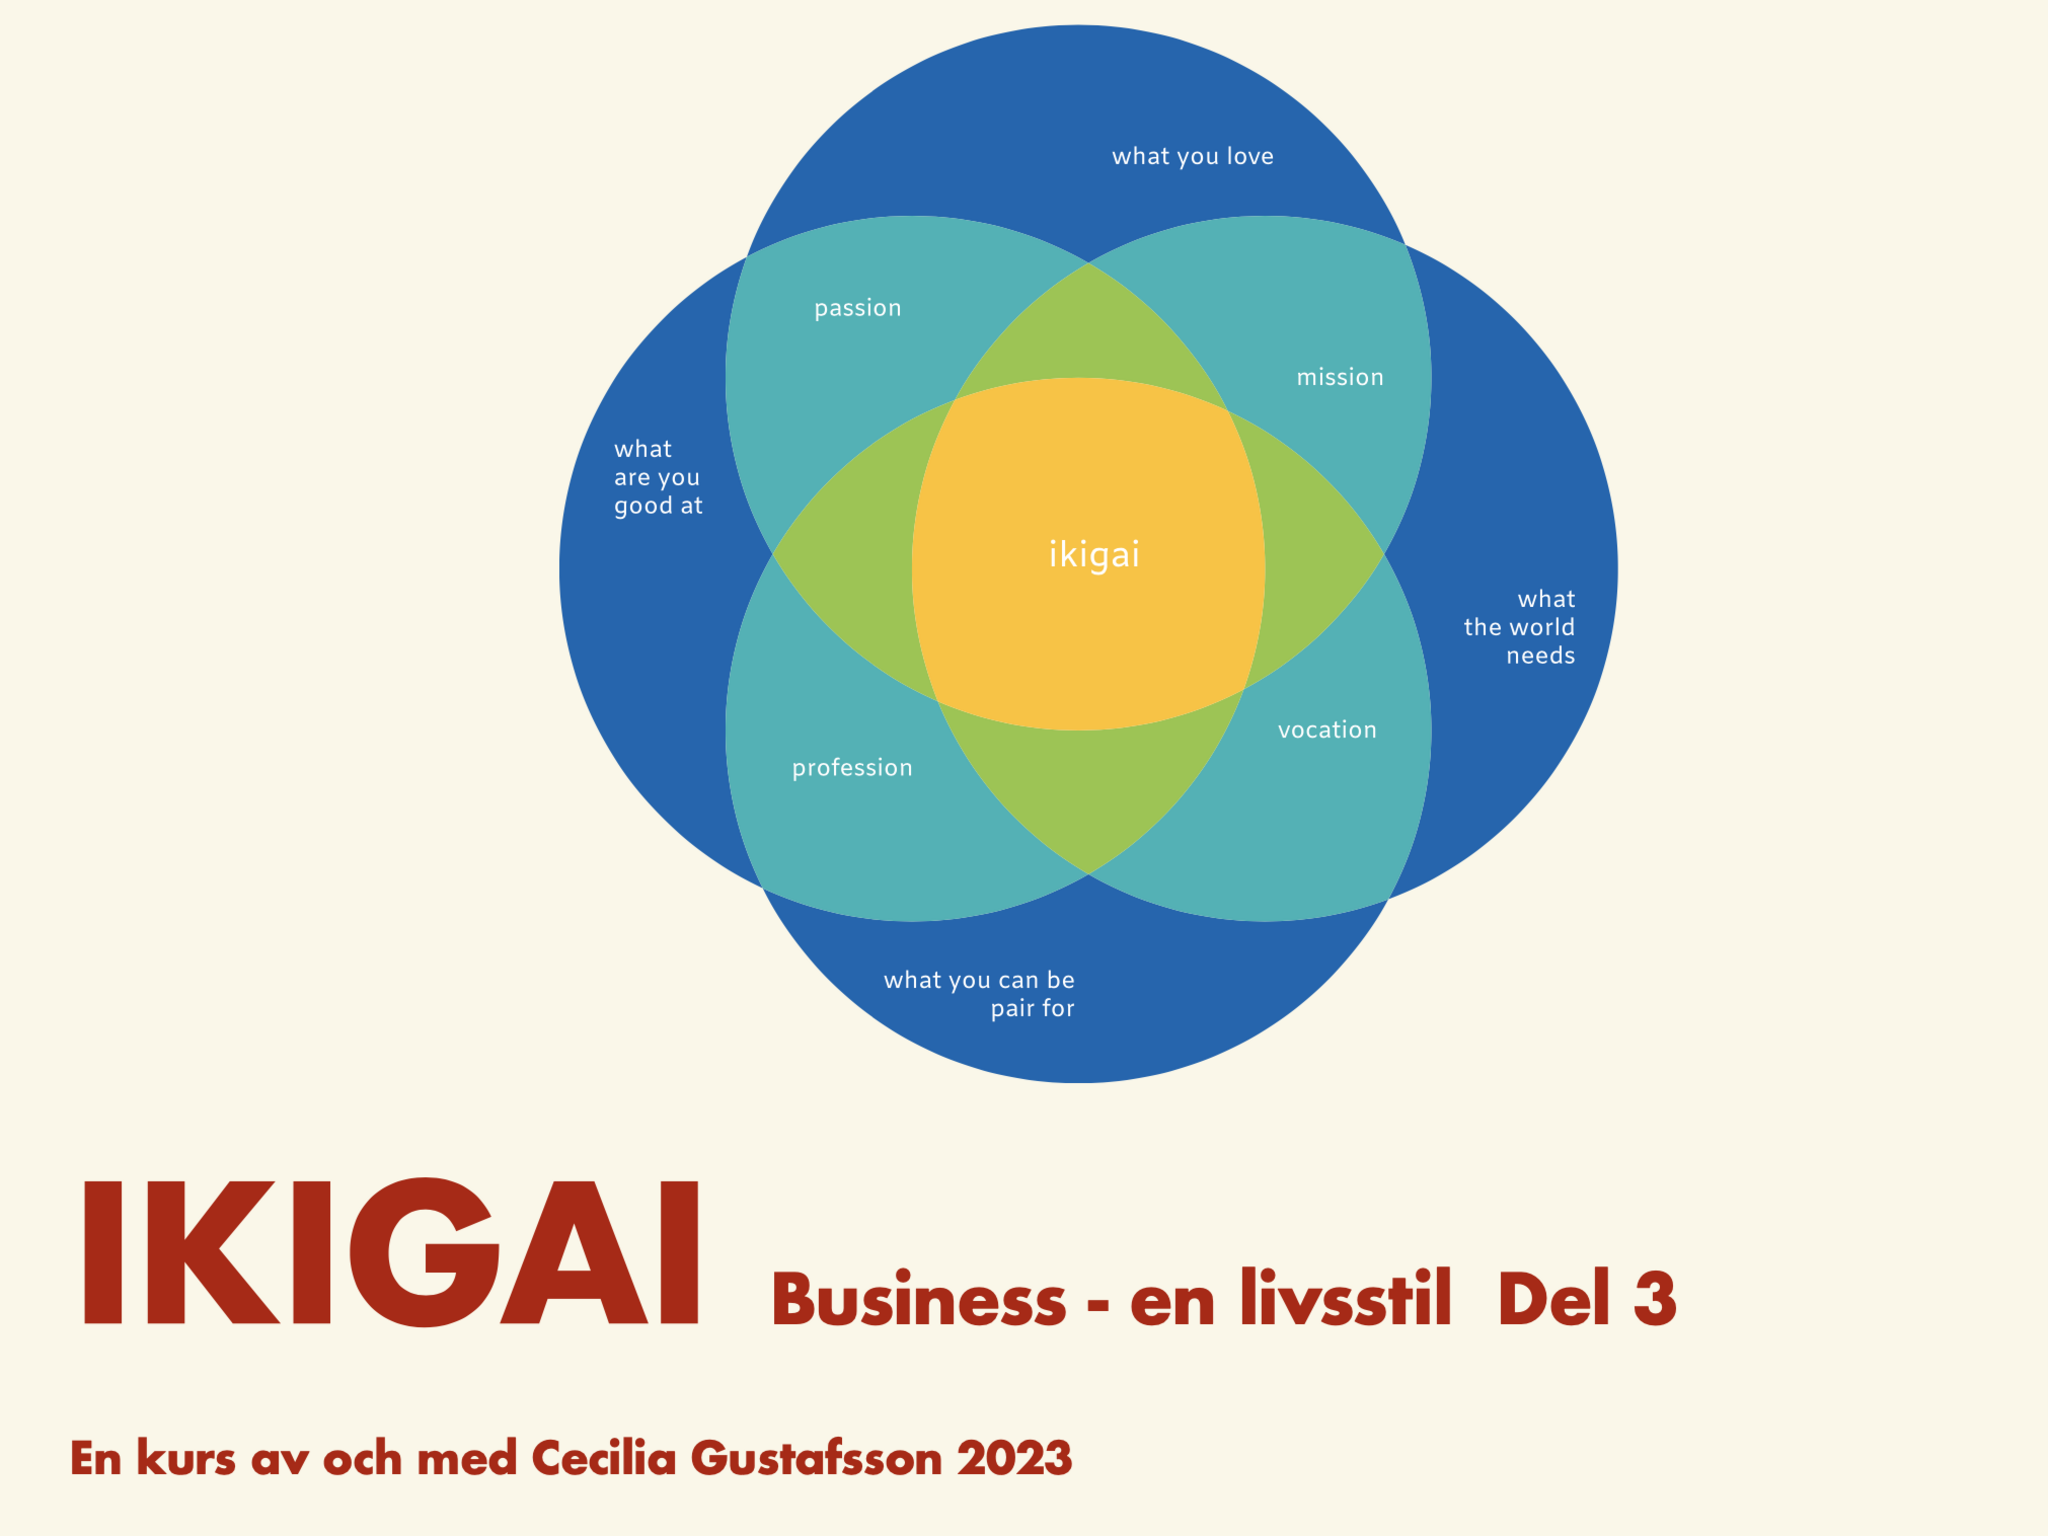 IKIGAI Business